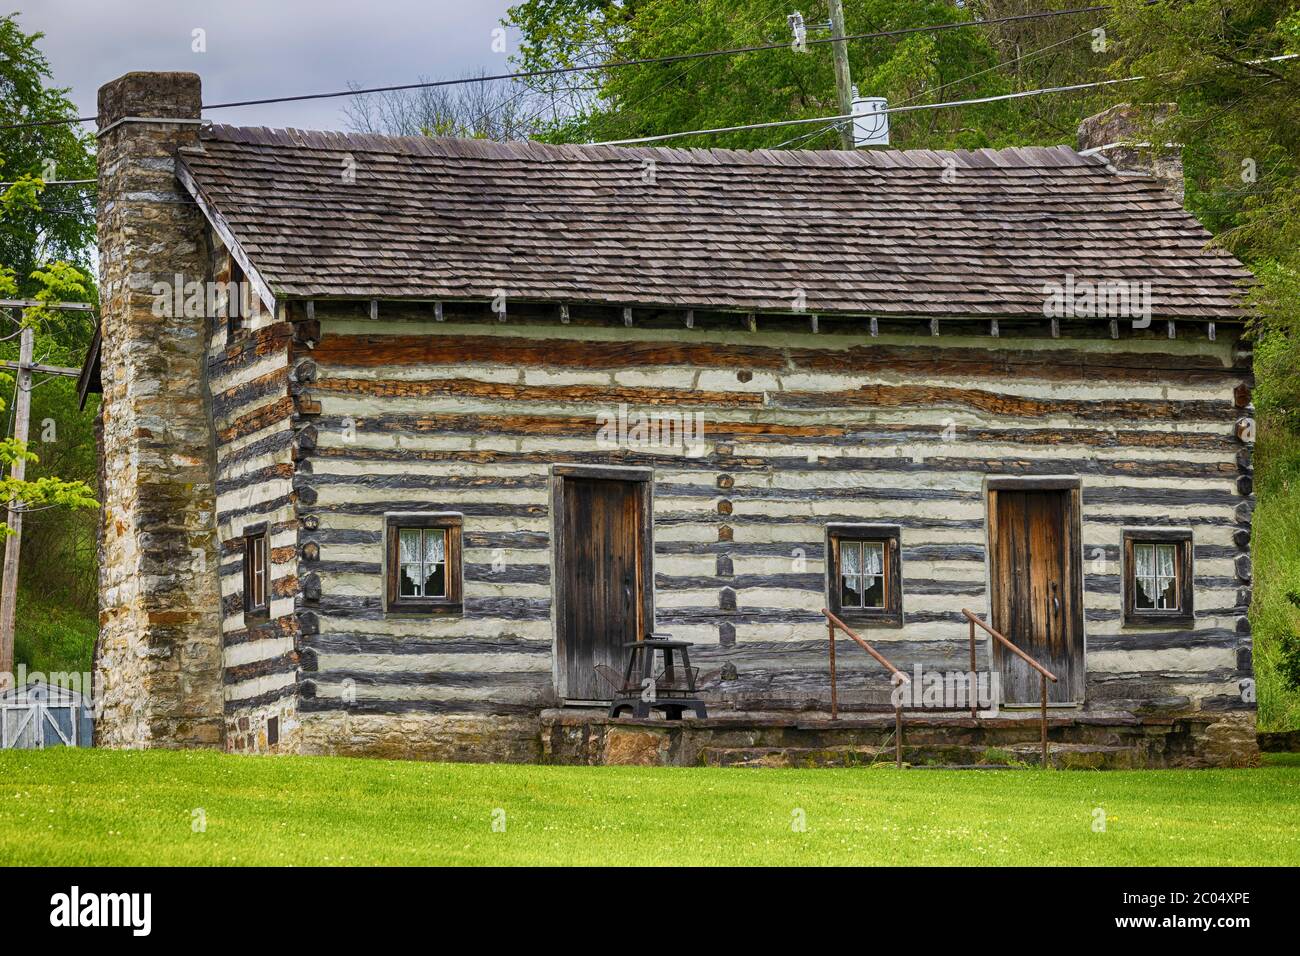 Saltville, Virginia, USA - 22. Mai 2020: Eine alte, gepflegte Blockhütte auf Kirchengrundstück. Stockfoto